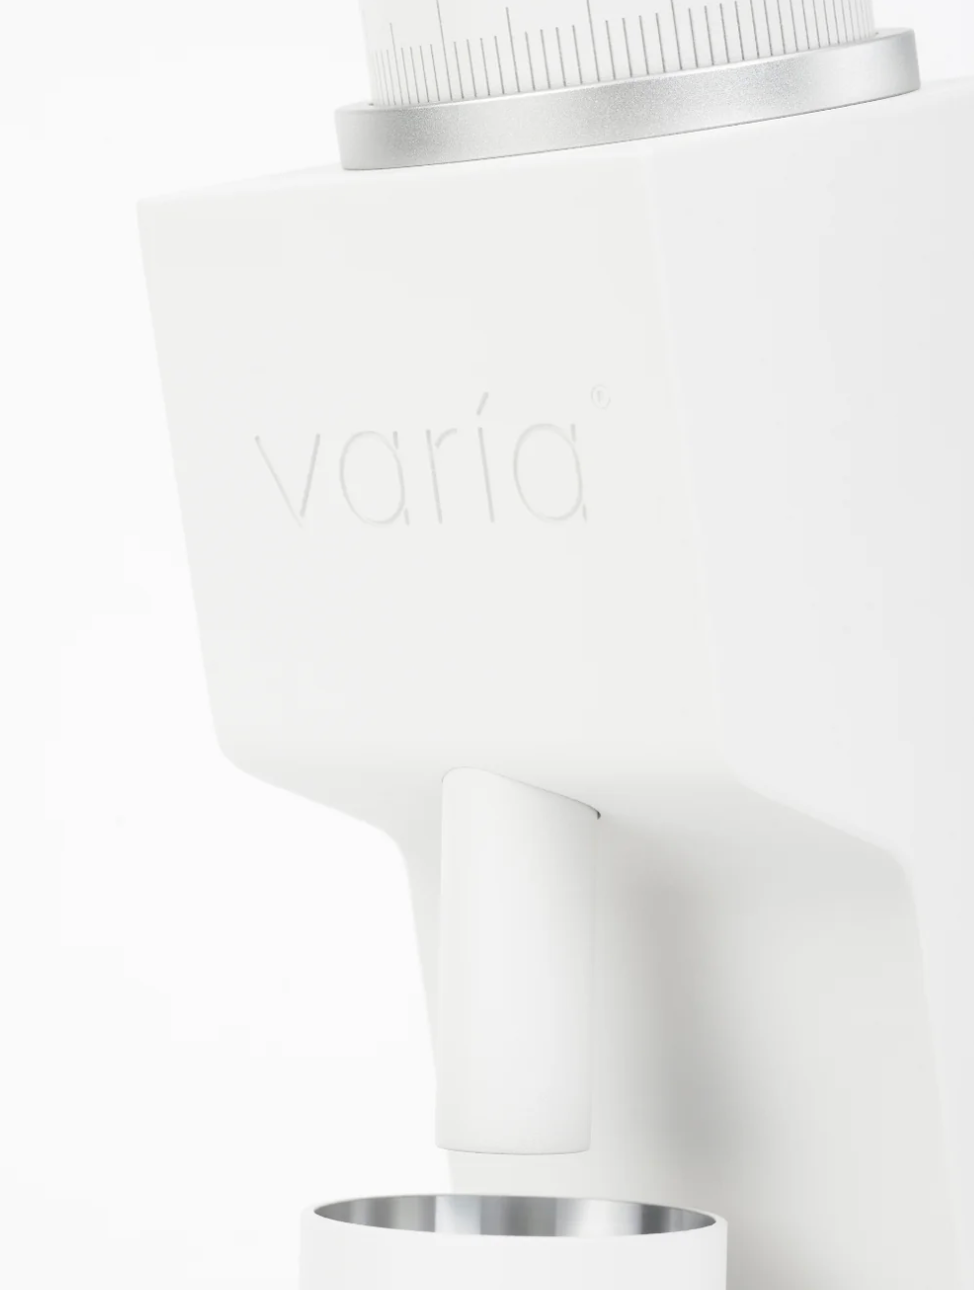 VARIA VS3 Grinder (2nd Gen) (120V)